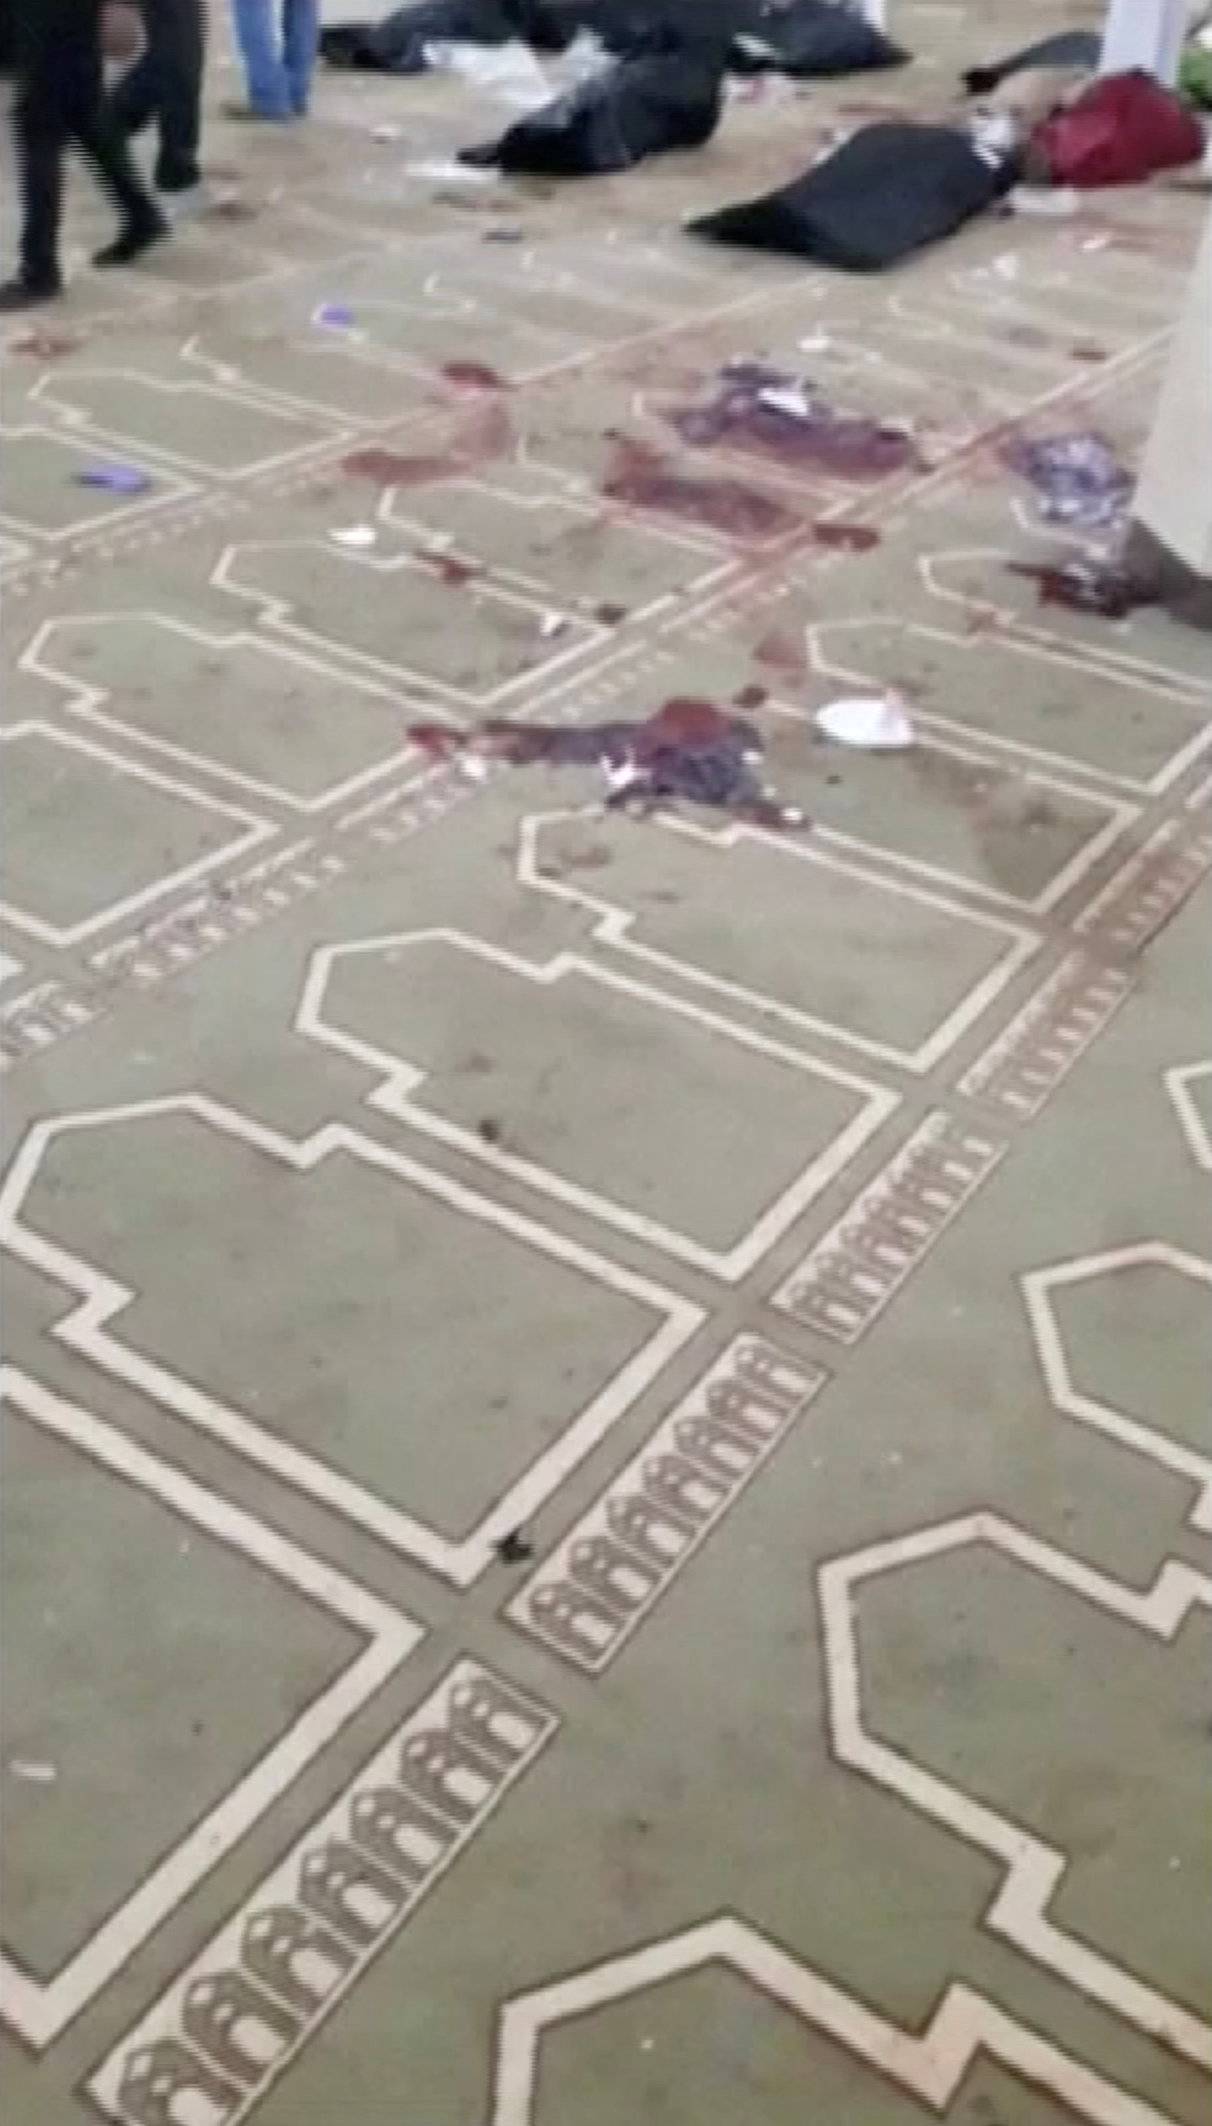 Blood is seen on the carpet inside Al Rawdah mosque in Bir Al-Abed